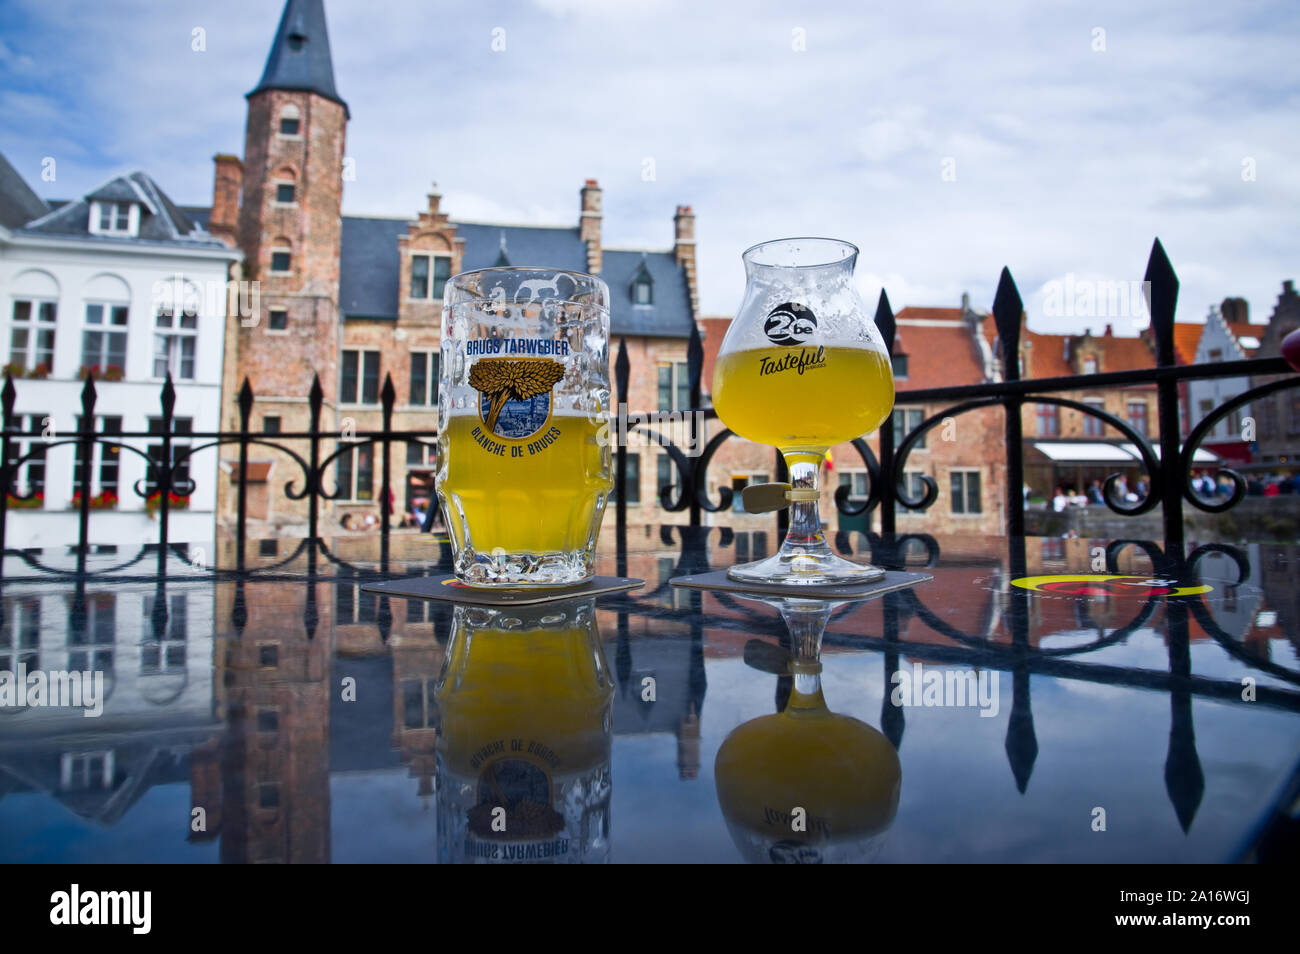 Zwei belgische Biere in Gläsern durch die glänzende Oberfläche reflektiert. Brügge, Belgien. Stockfoto